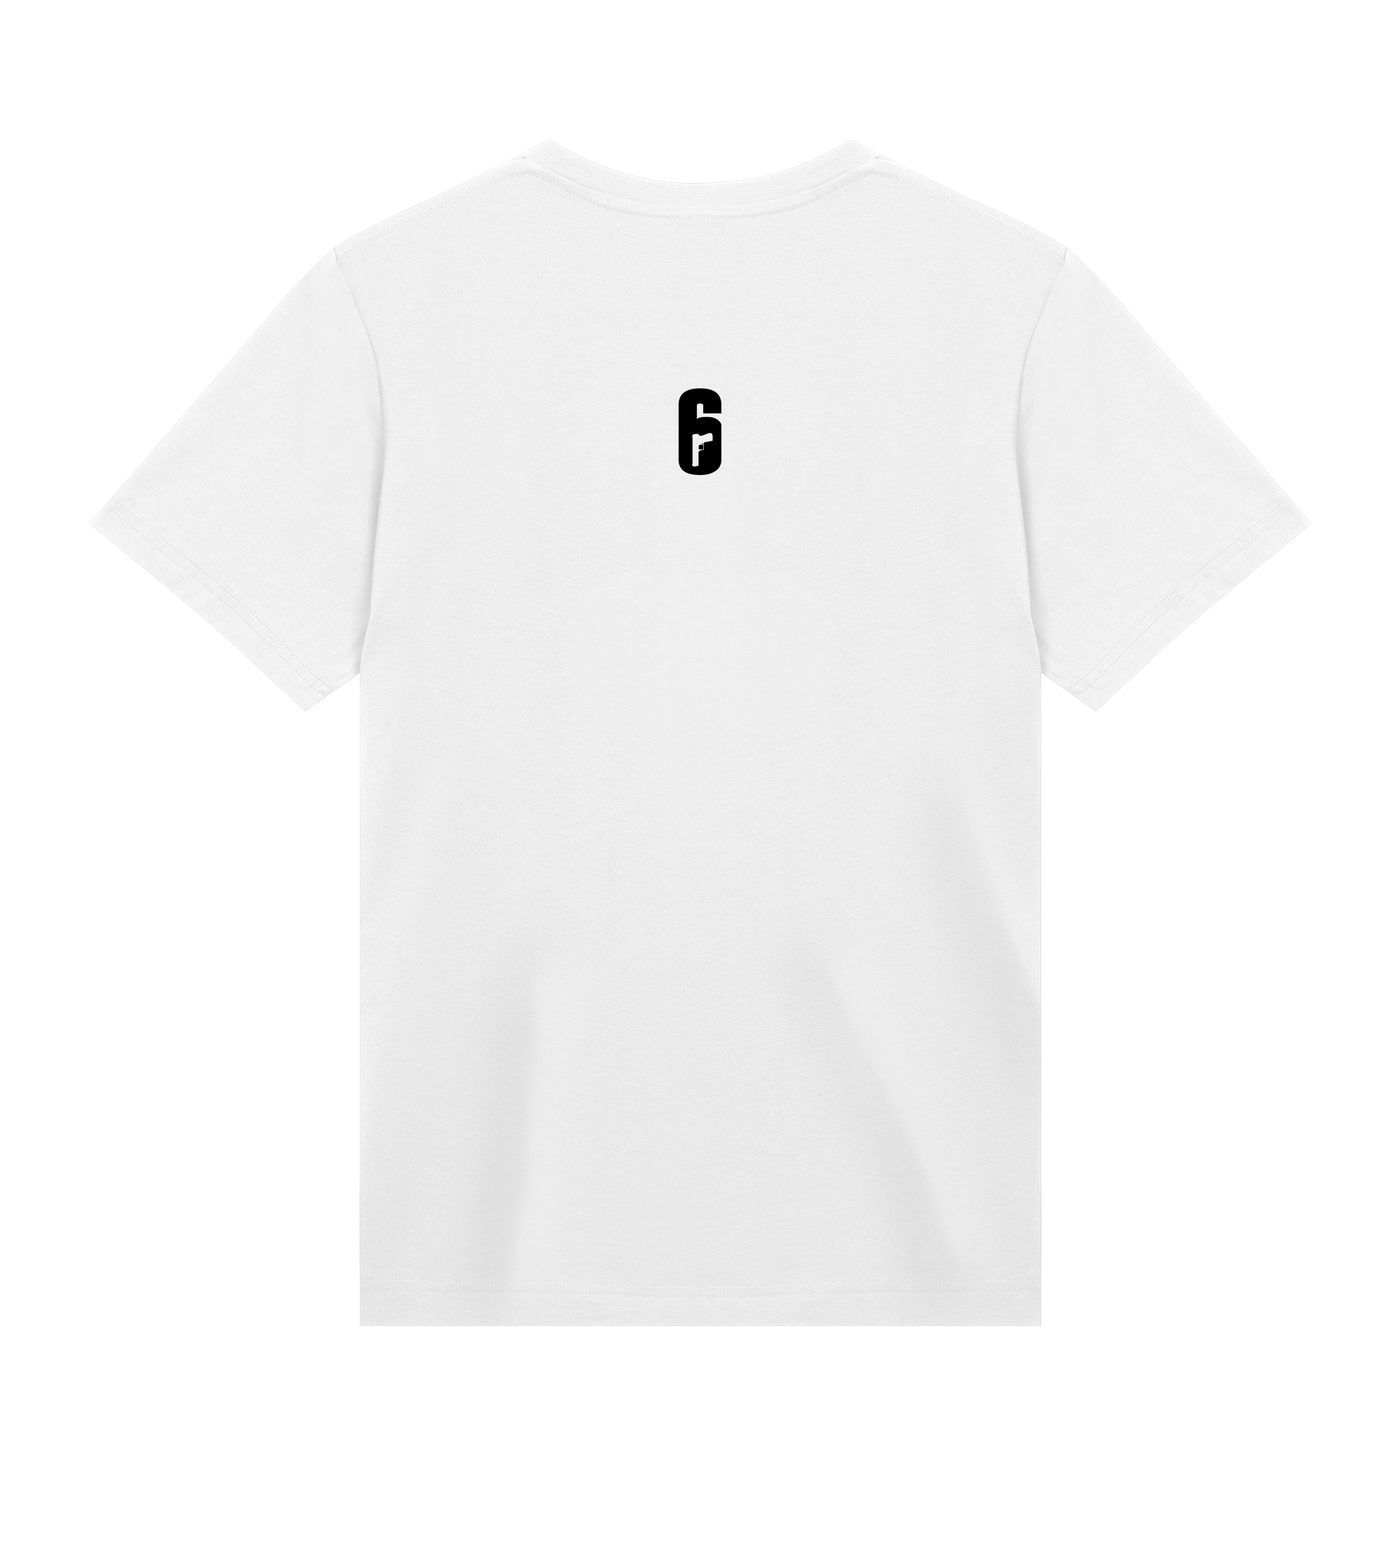 6 SIEGE - Ghosteyes T-shirt